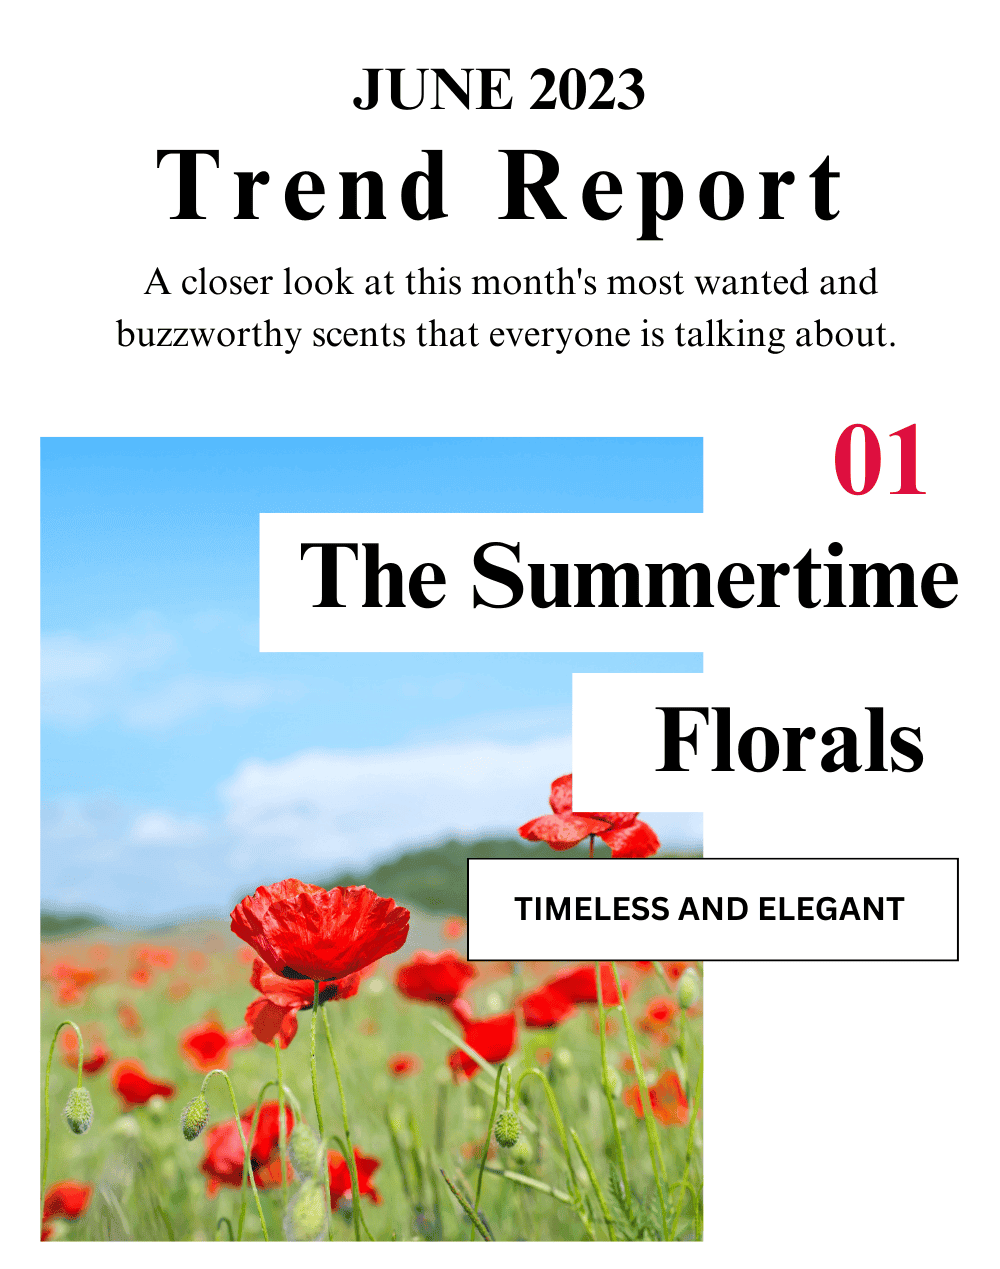 June 2023 Trend Report